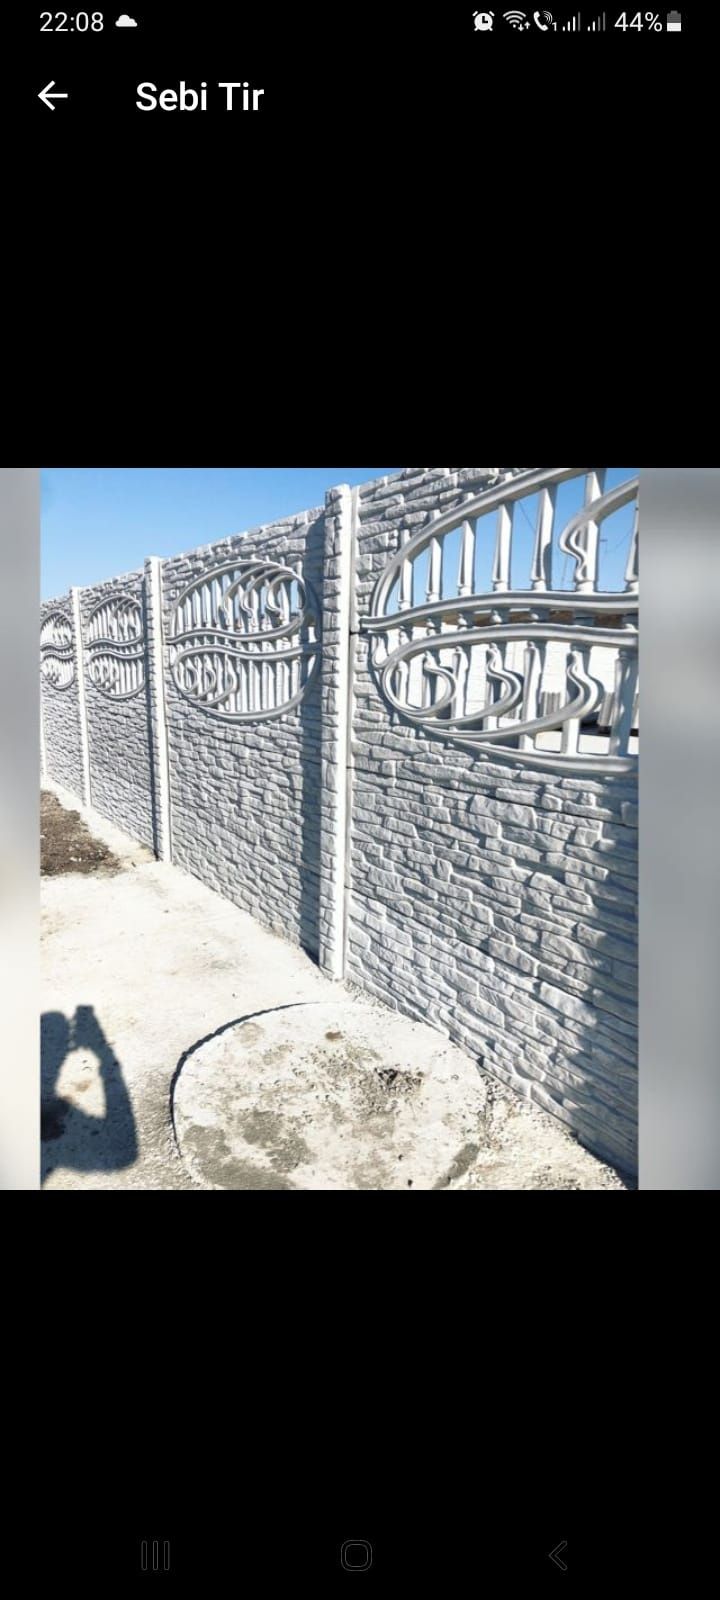 Gard de beton armat cu fier